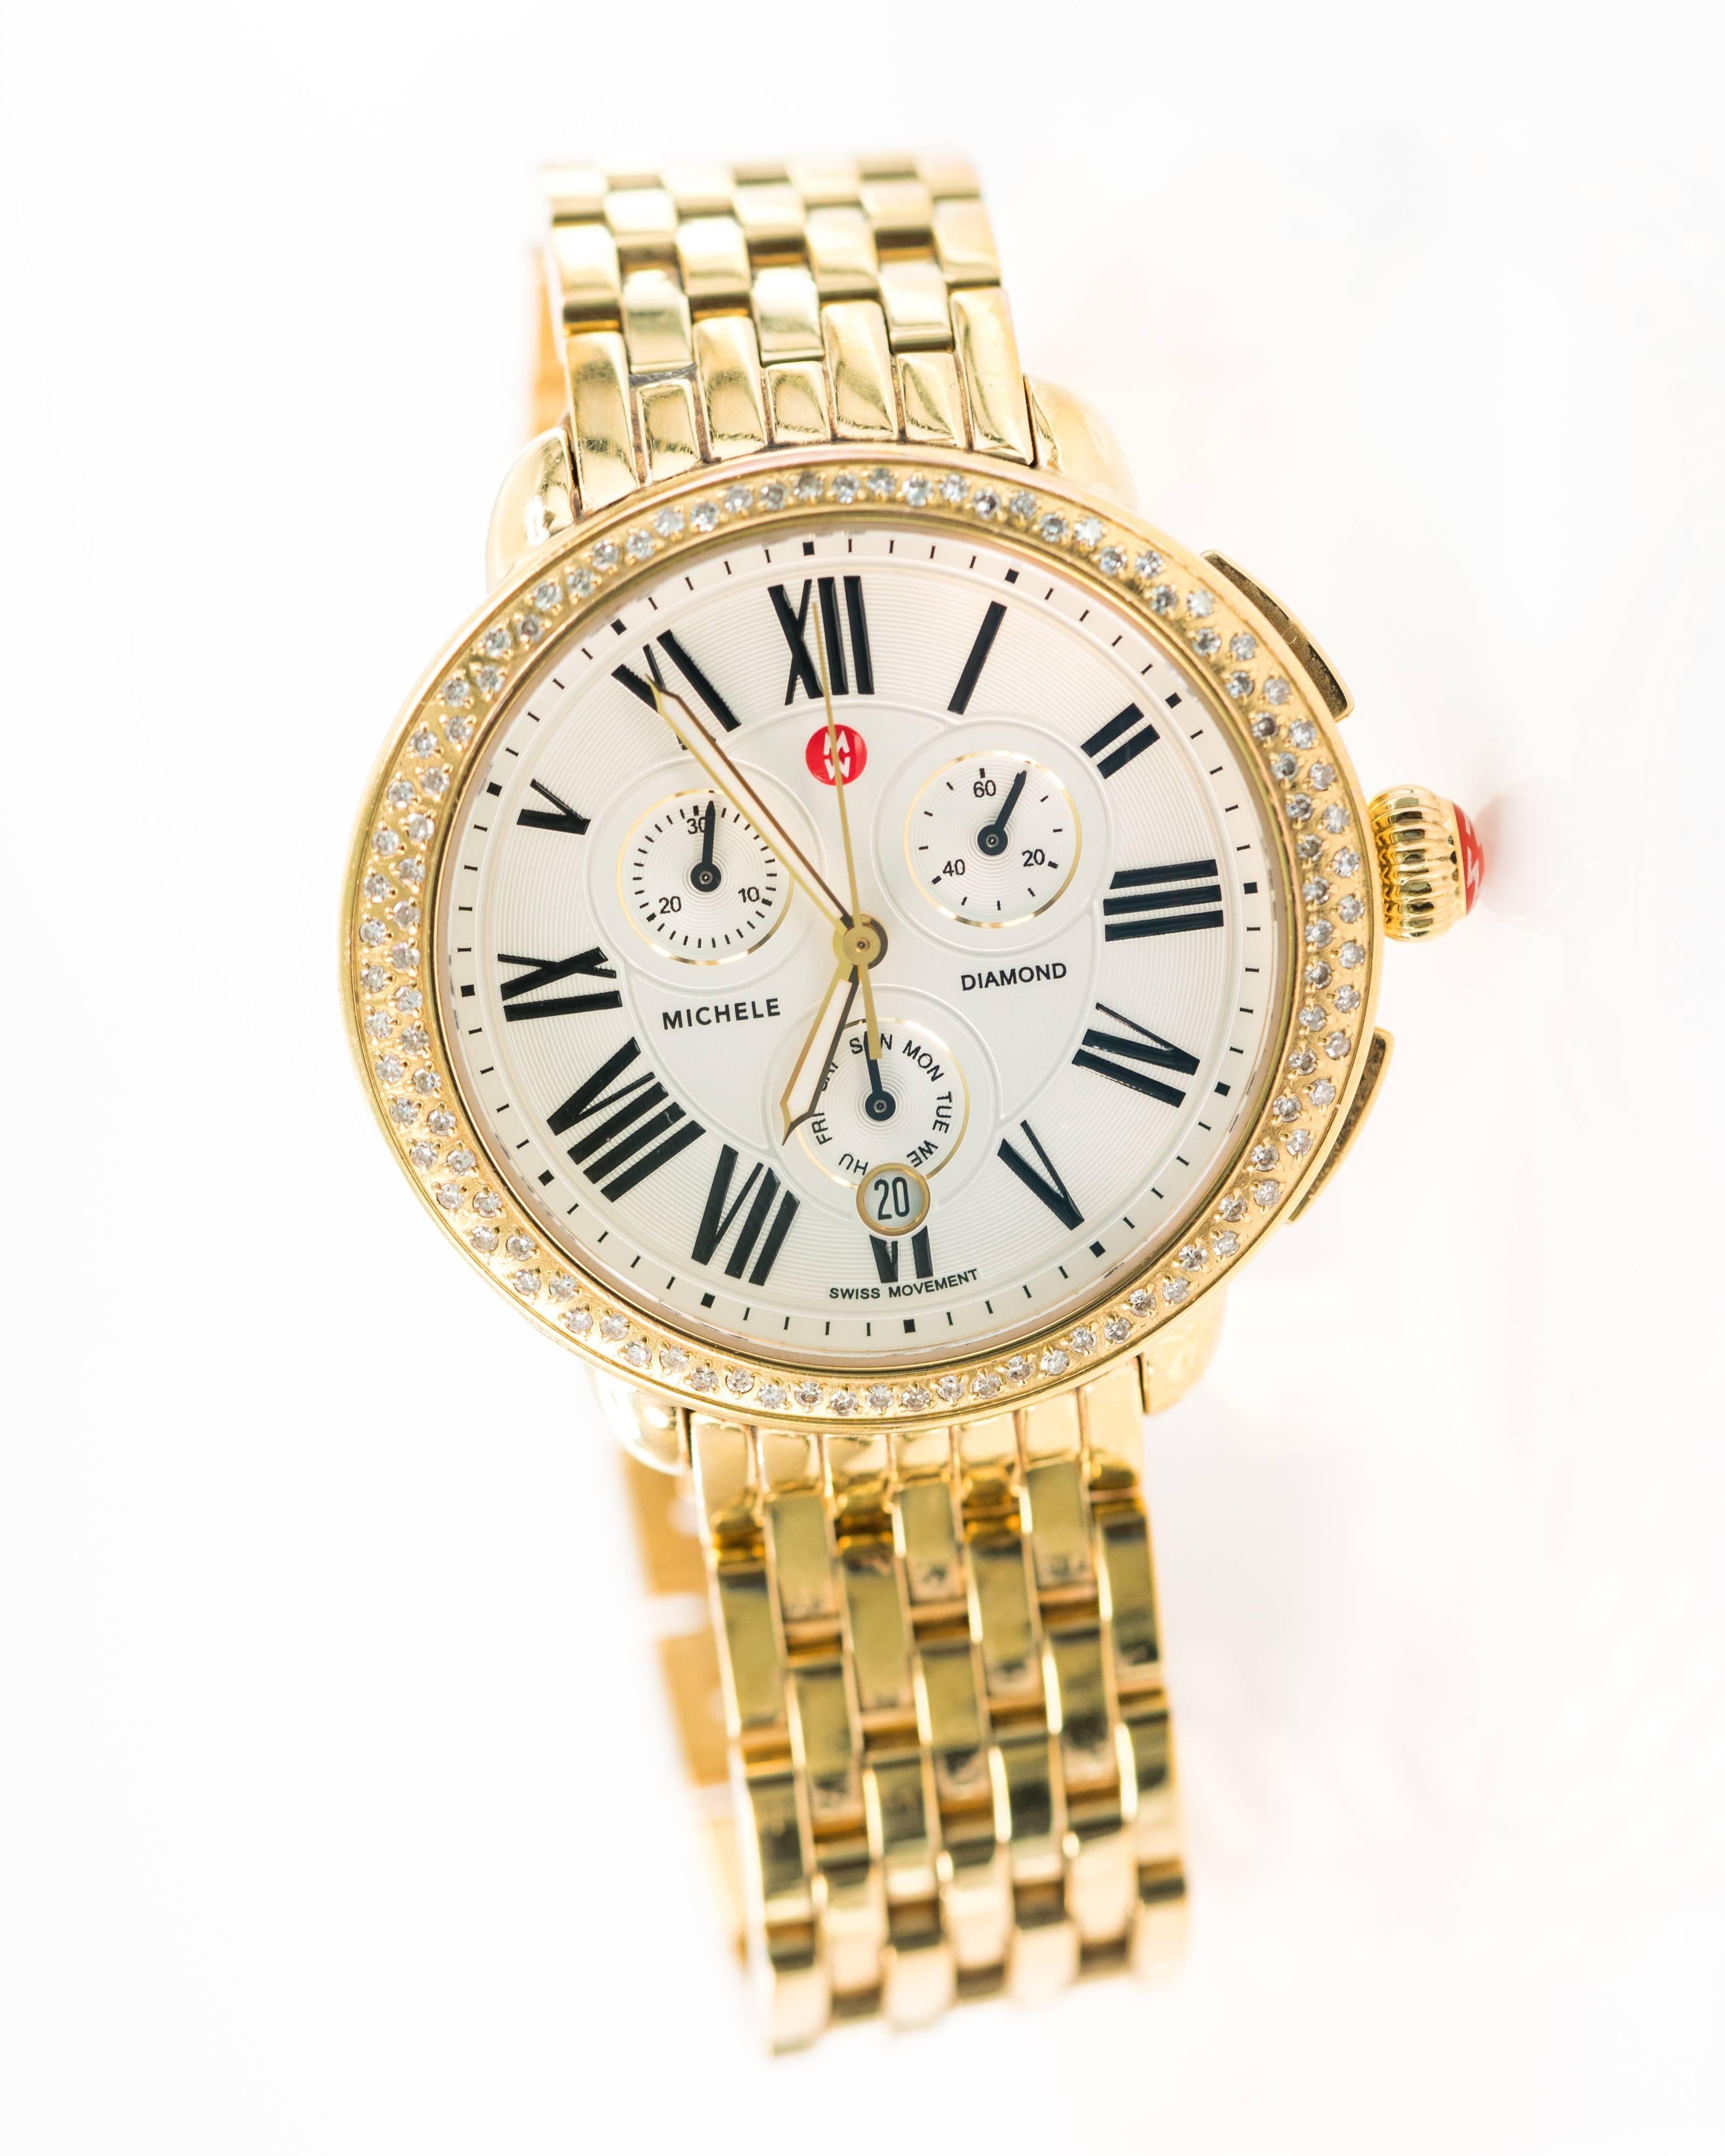 Women's or Men's 2014 Michele Sereine Diamond Wristwatch